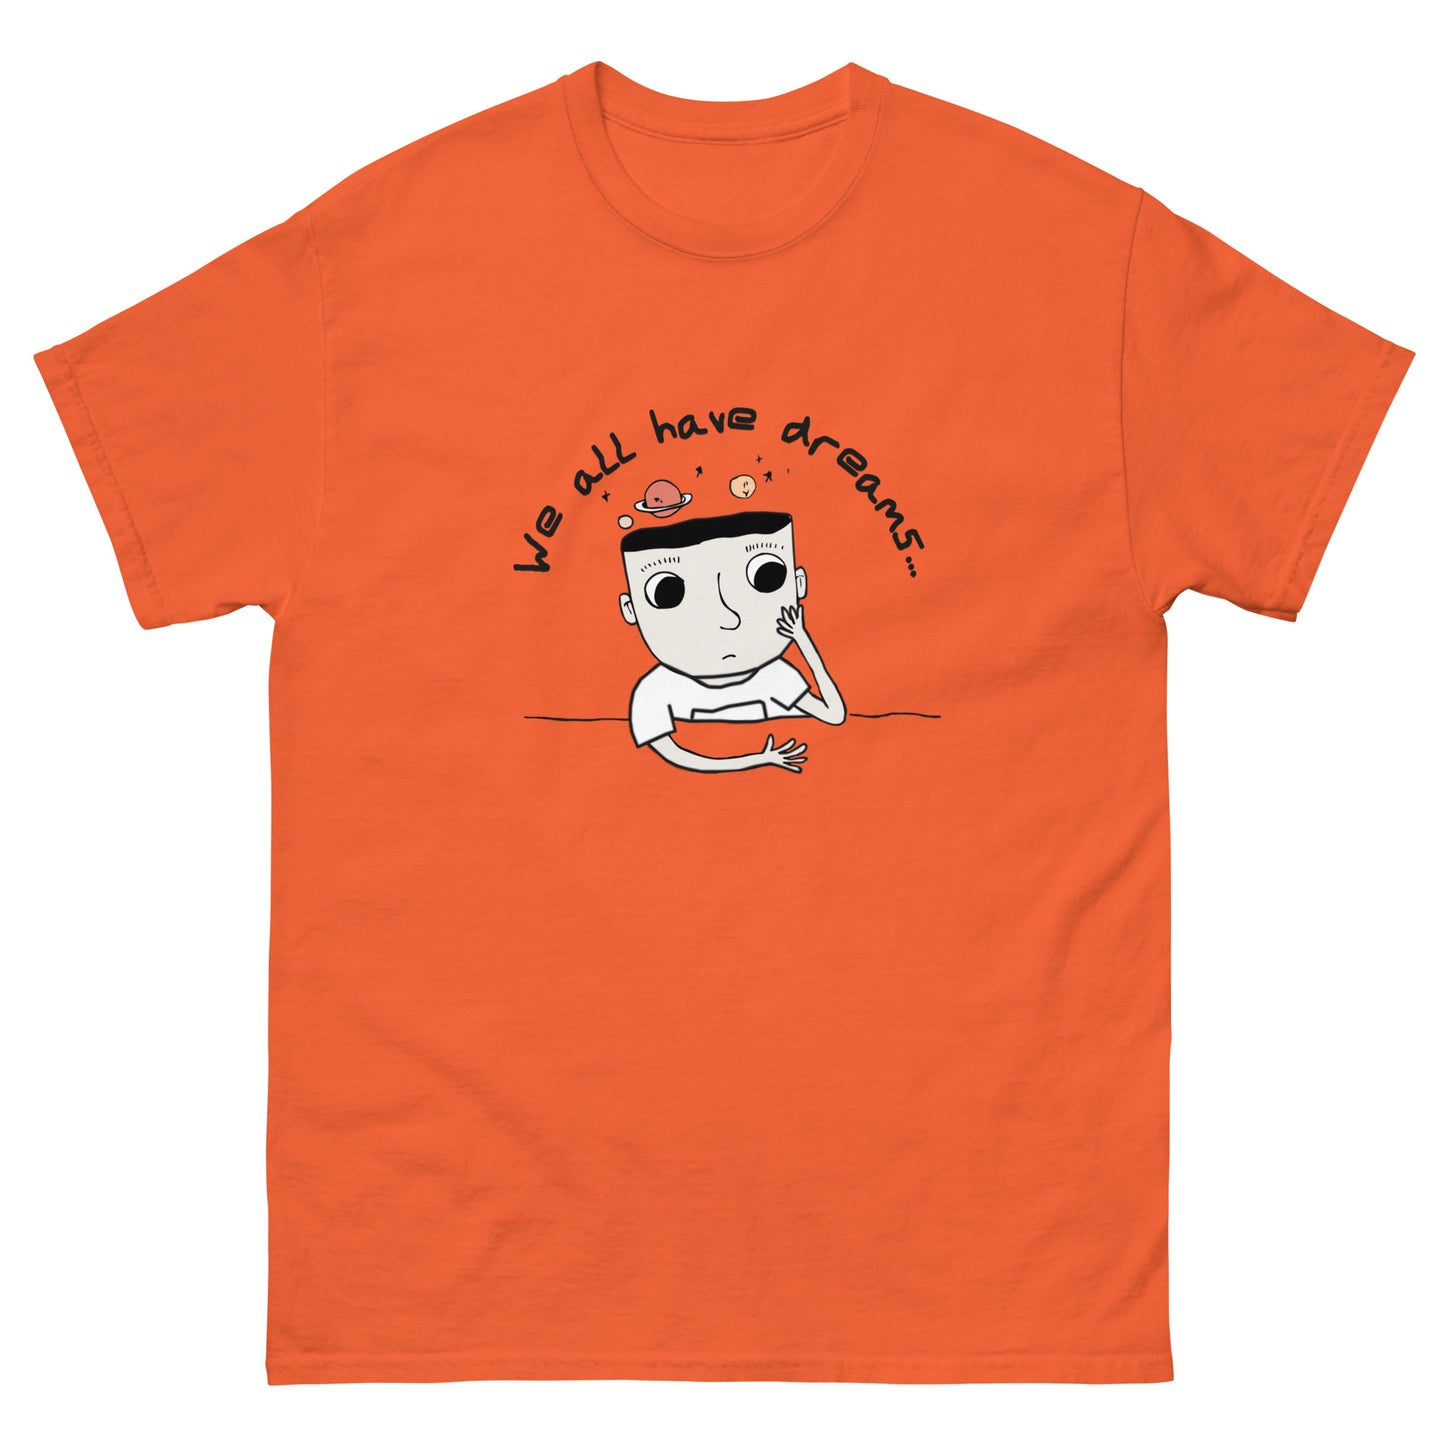 orange color cotton t shirt with dream boy